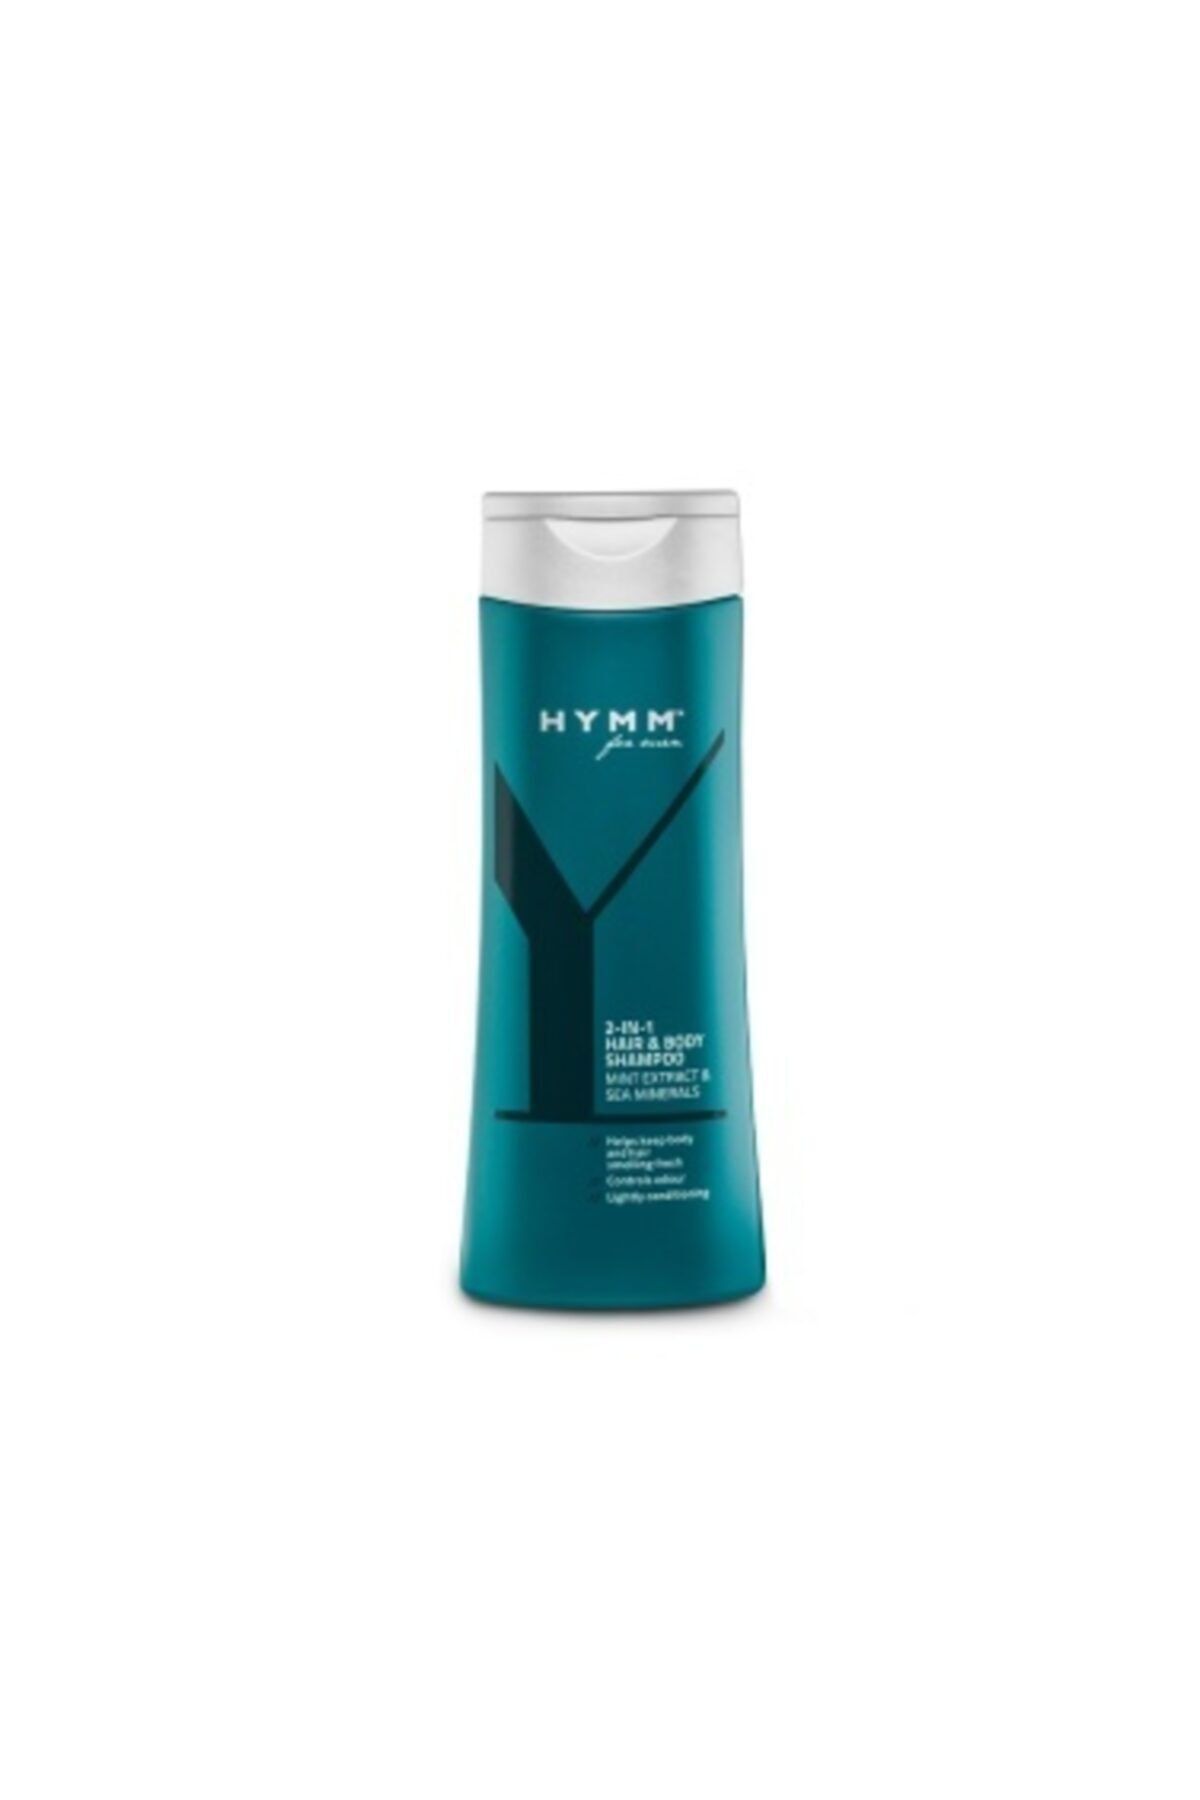 Amway Saç Ve Vücut Şampuanı Hymm 250 ml